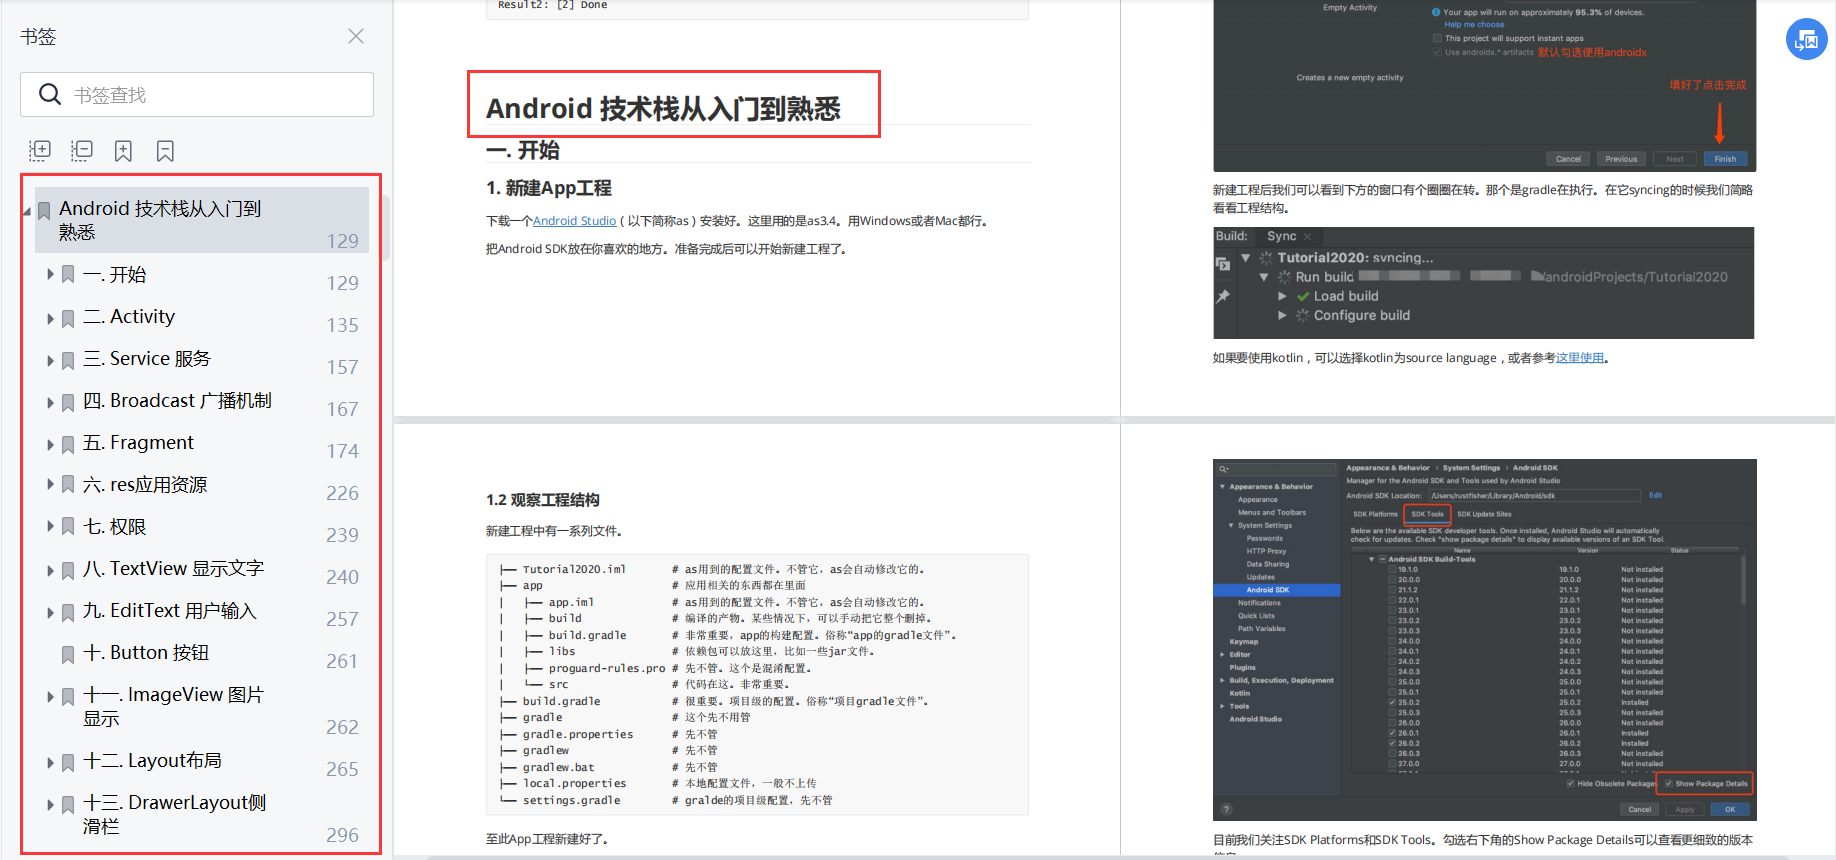 【建议收藏】Android开发零基础入门学习资料自学必备_Android_04